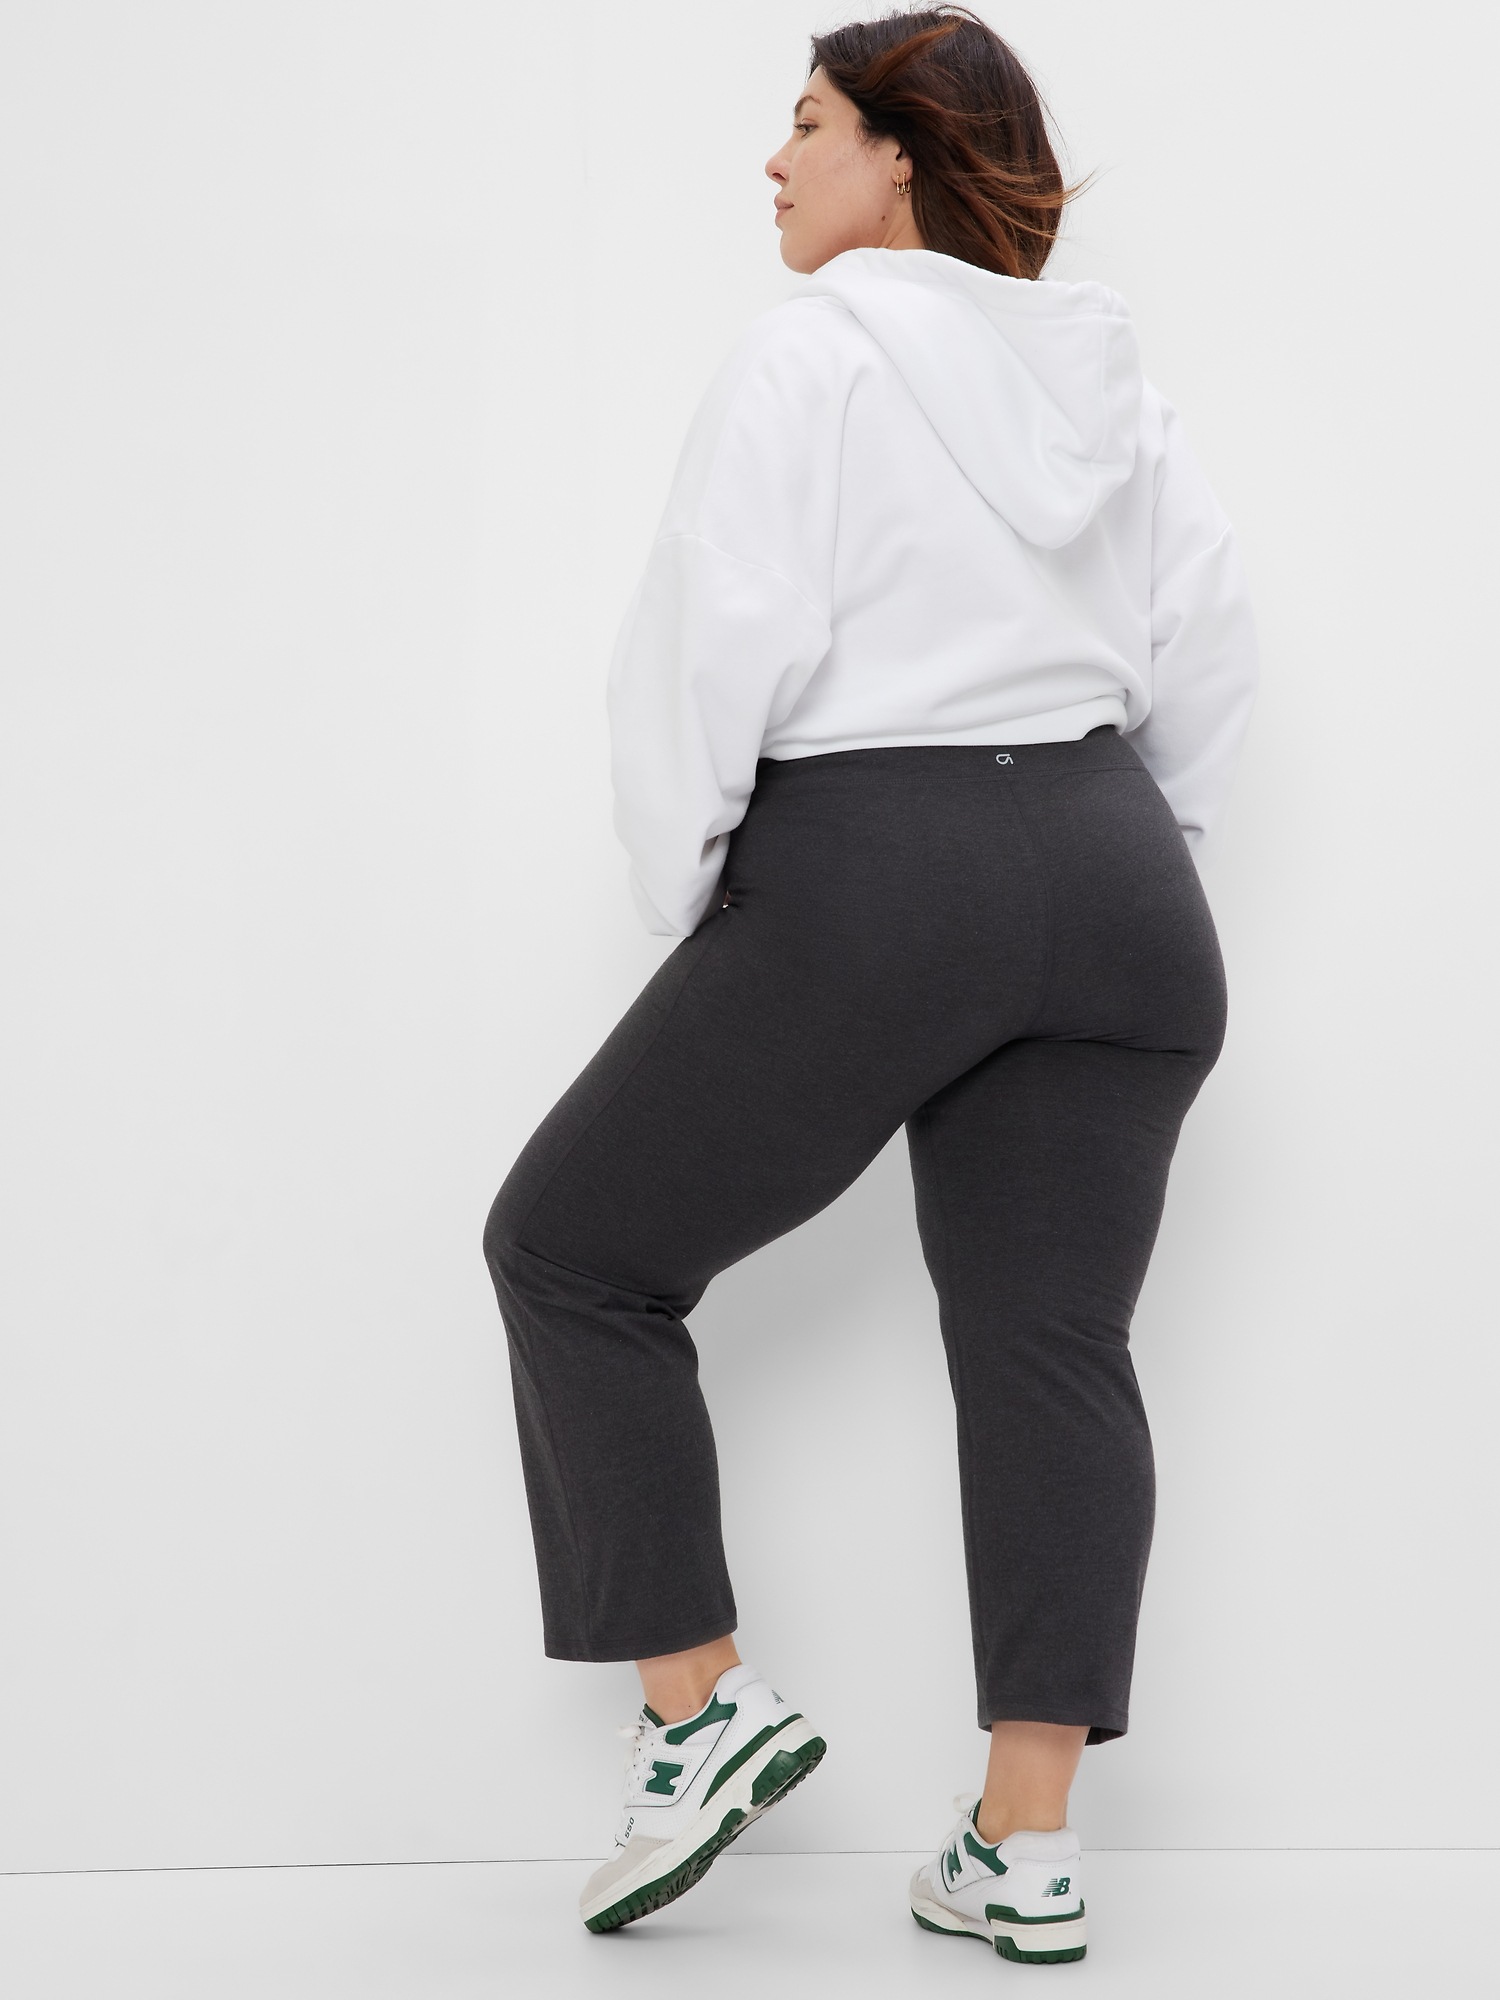 ASOS DESIGN shorter length cotton legging short in gray heather